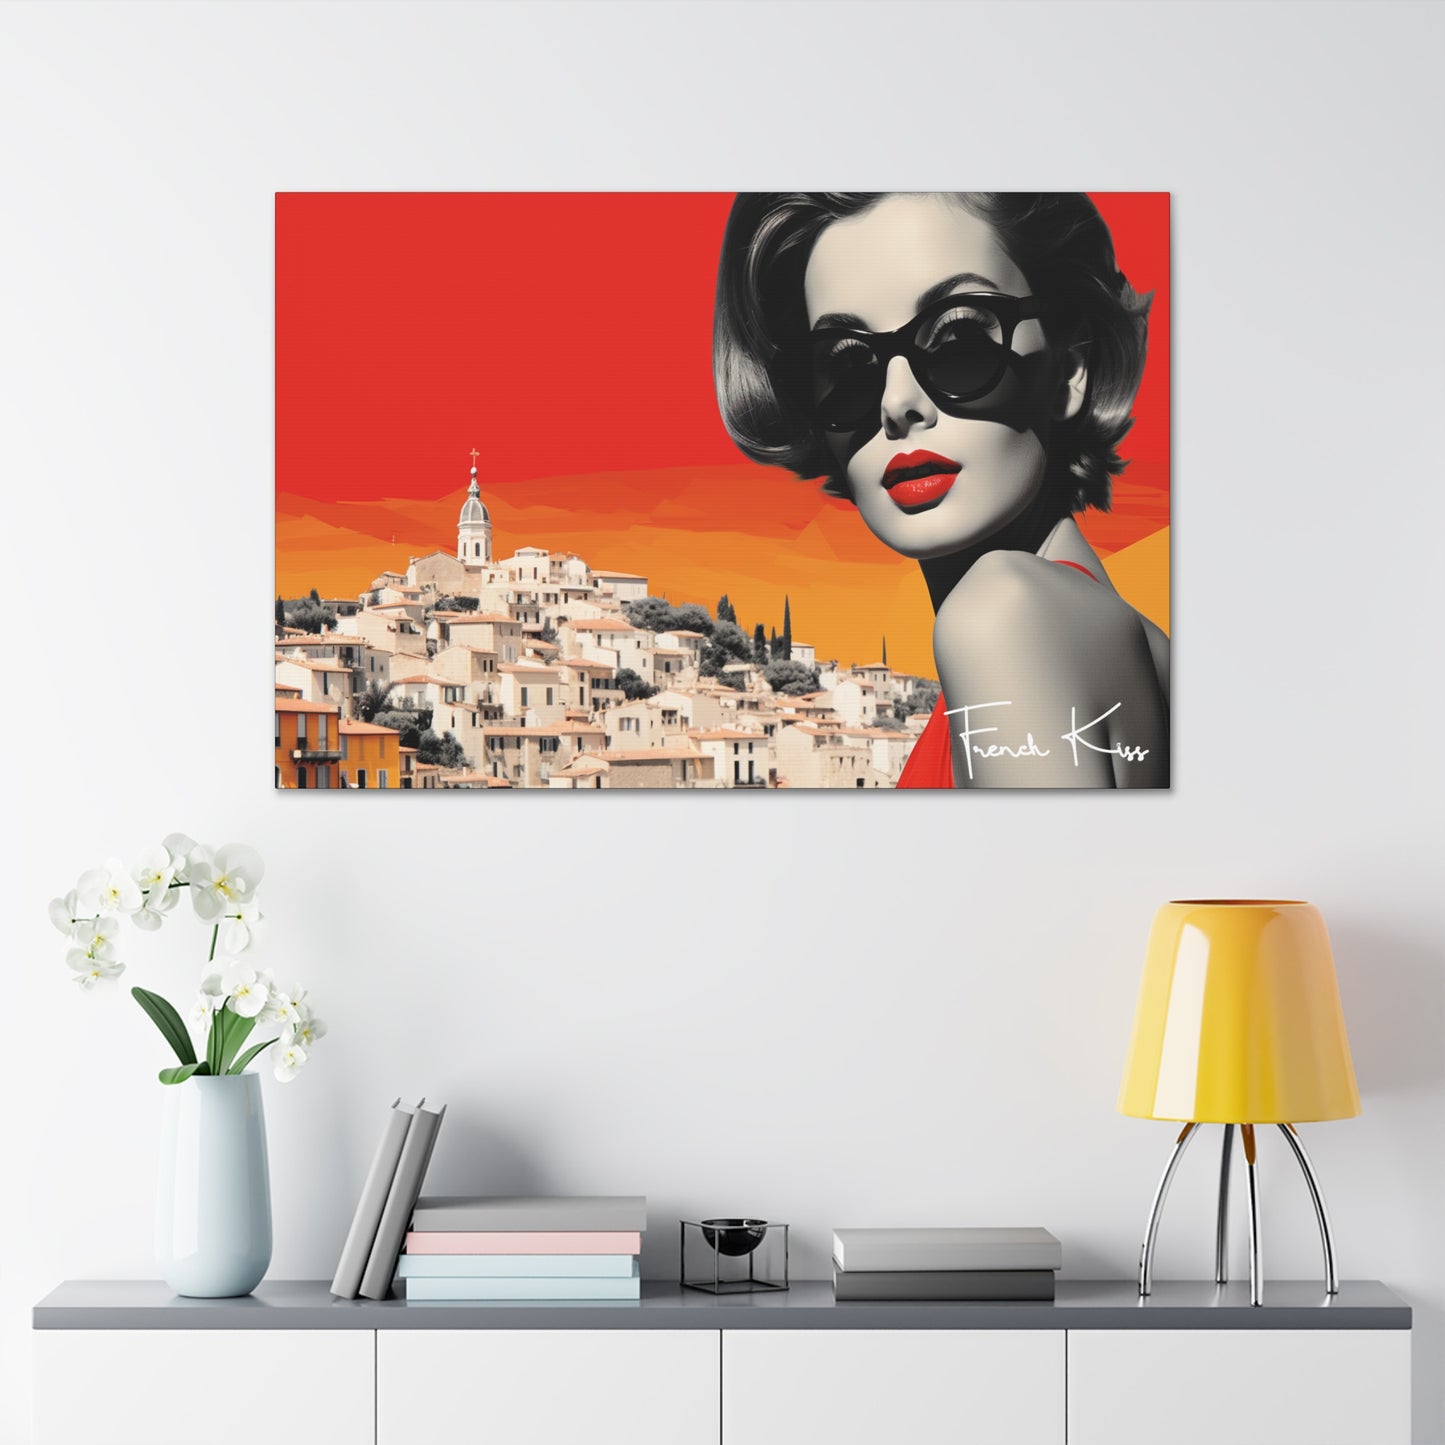 ENVY French Kiss Pop Art, Gallery, Canvas, Art, Vintage, Retro, St. Tropez, Collection, French Riviera, Travel, Cote d'Azur, Cannes, Pop Art, Decor